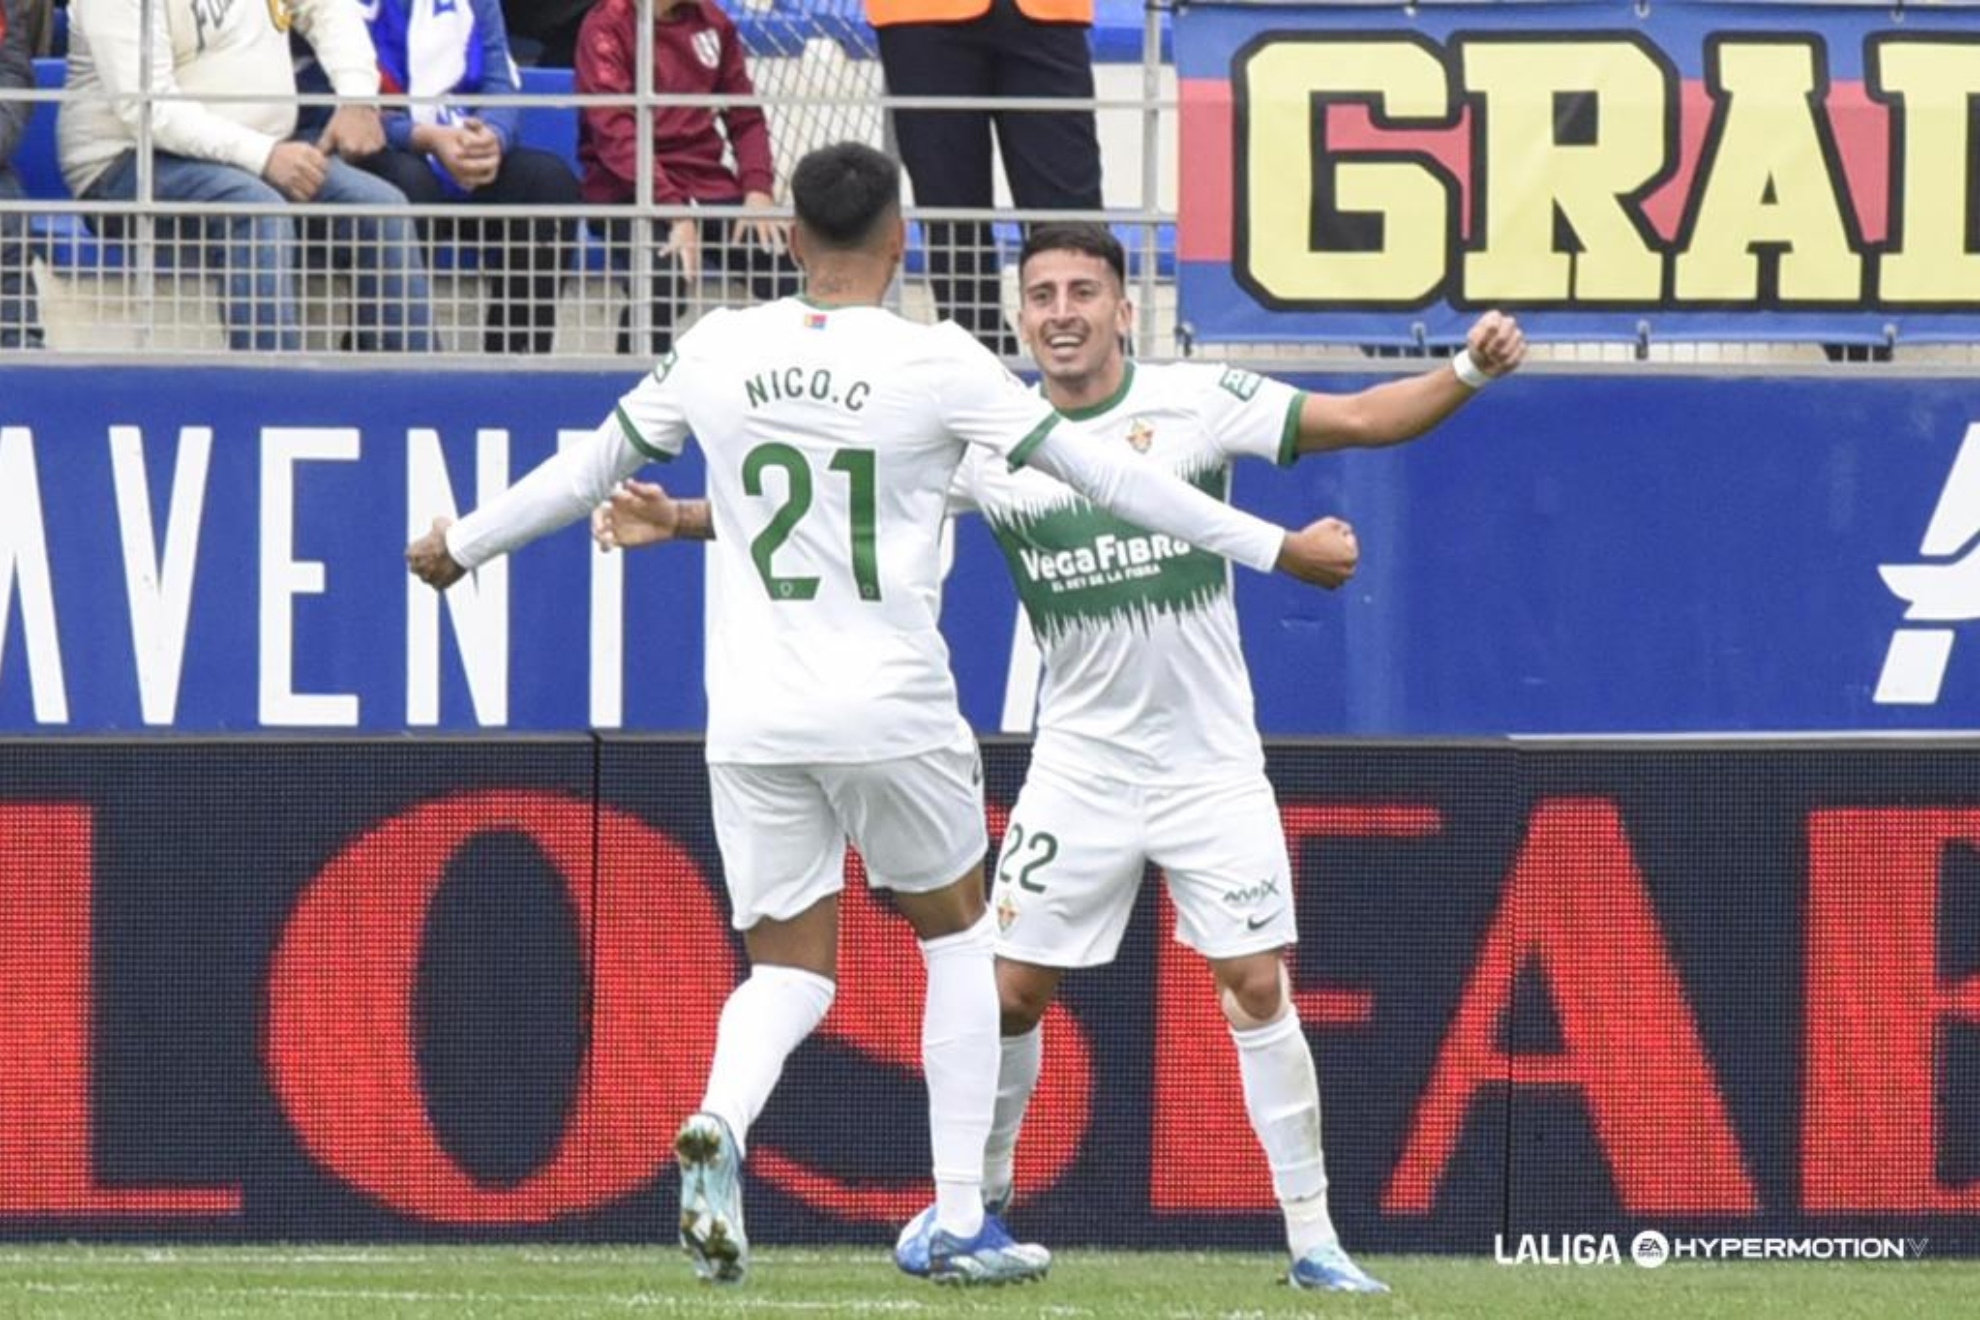 Nico Fernndez y Nico Castro celebran uno de los goles ilicitanos esta temporada.